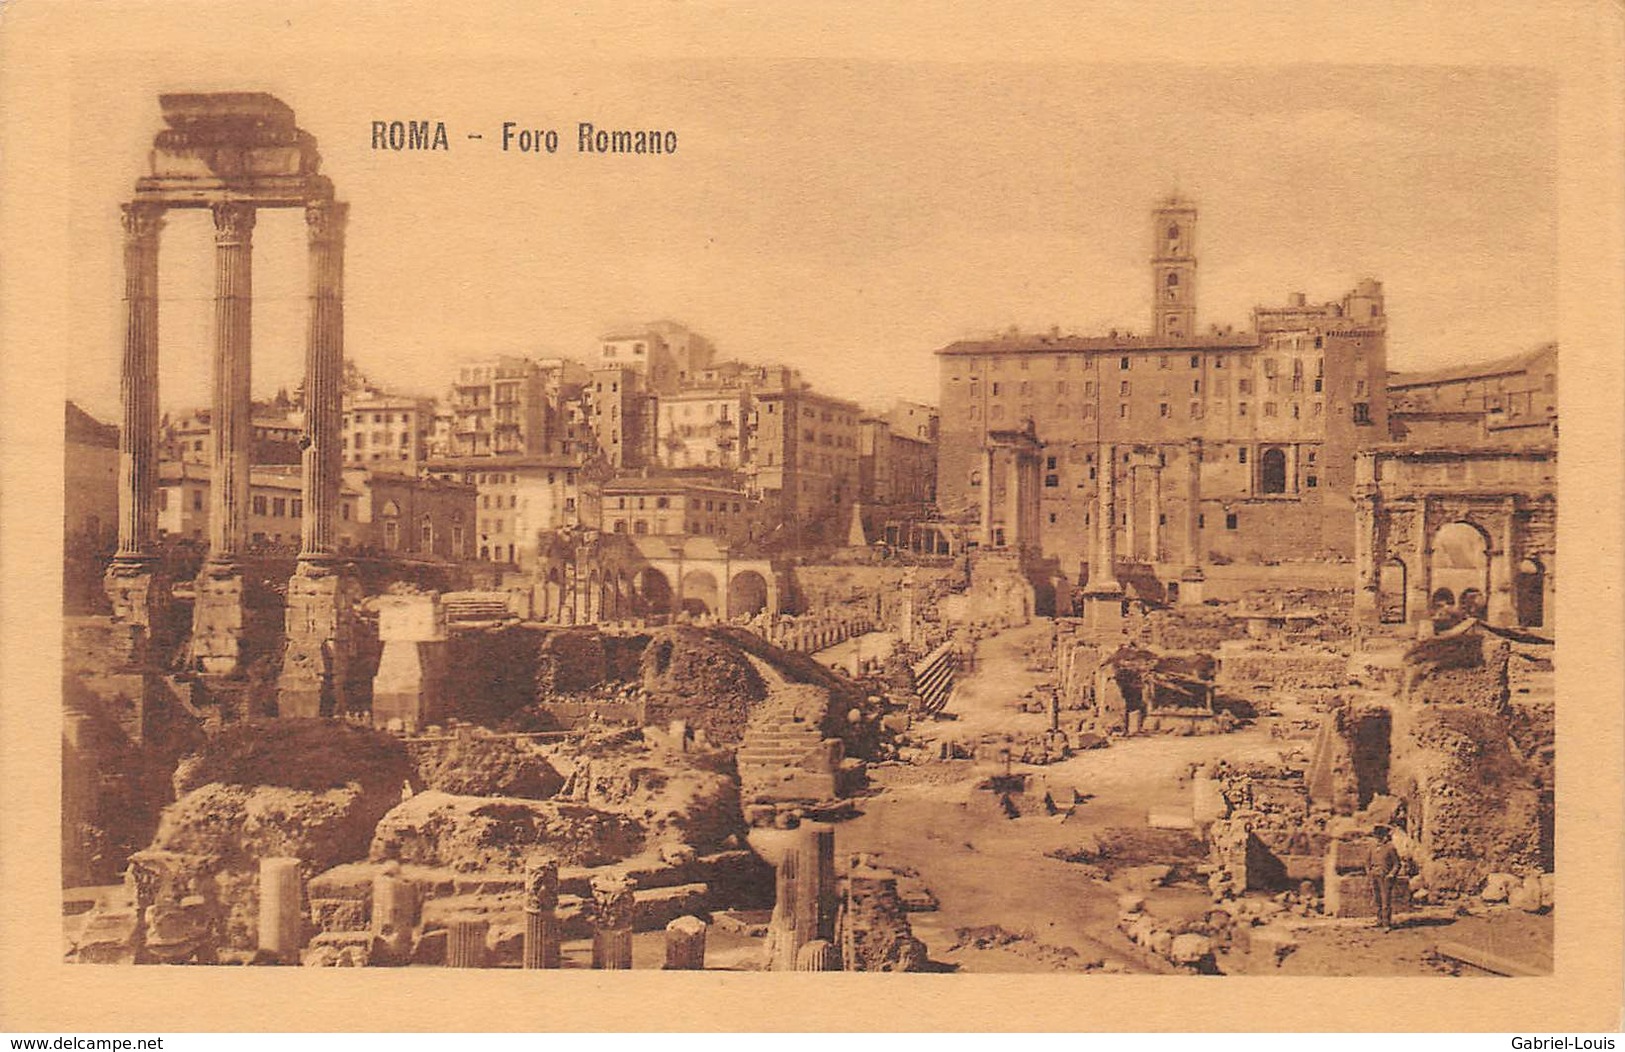 Roma  - Foro Romano - Carta Non Inviata - Andere Monumente & Gebäude